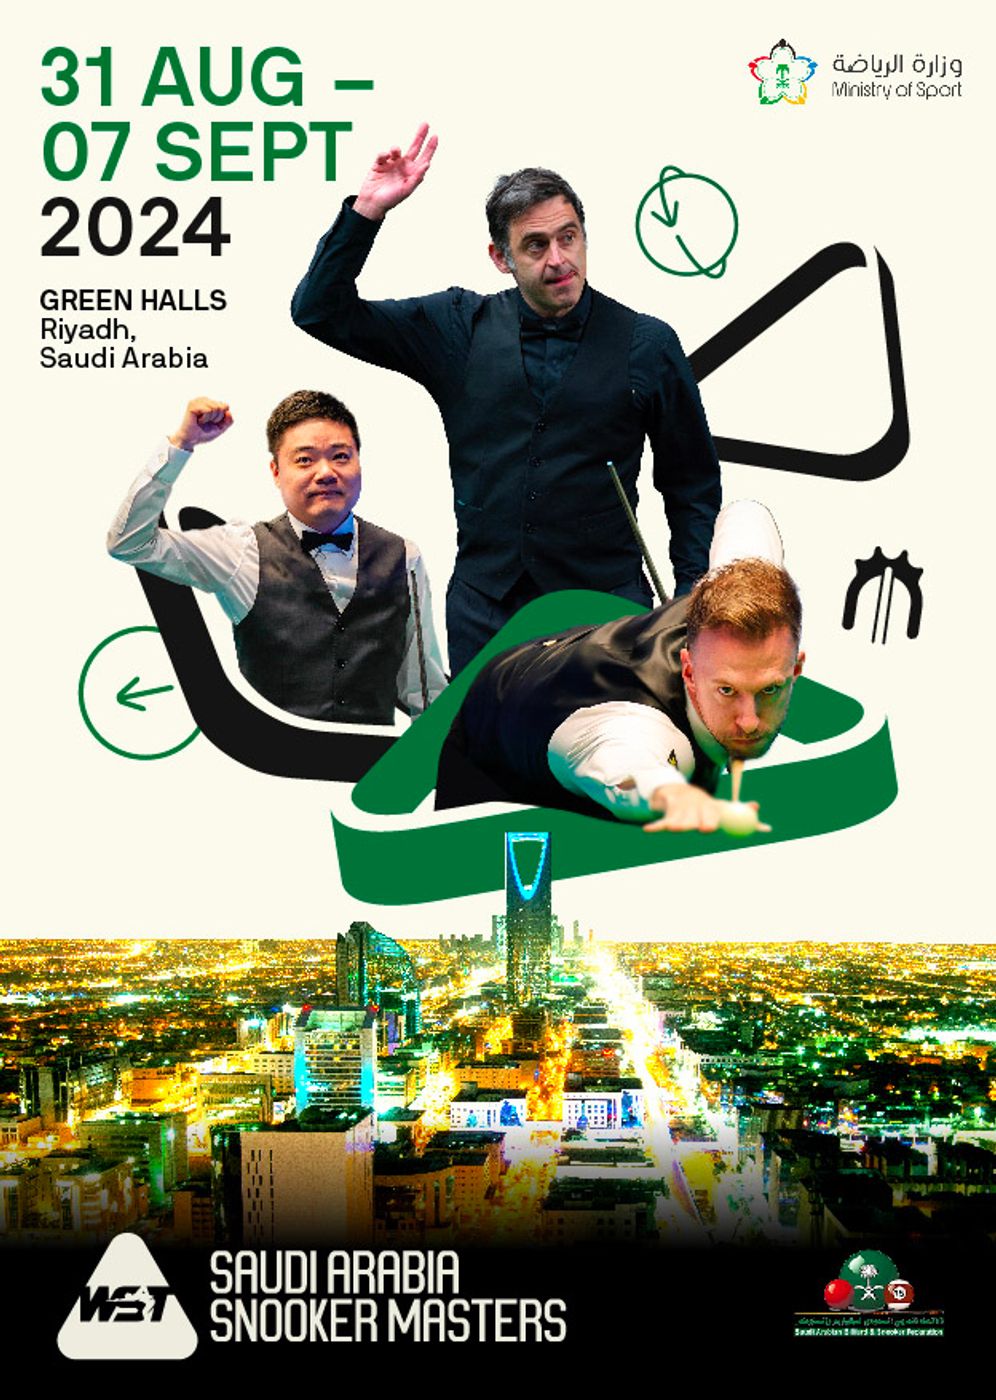 월드스누커투어(WST) 랭킹토너먼트인 '사우디아라비아 스누커 마스터스'가 오는 8월 31일부터 9월 7일까지 총상금 200만파운드(약 33억원) 이상의 규모로 개최된다.